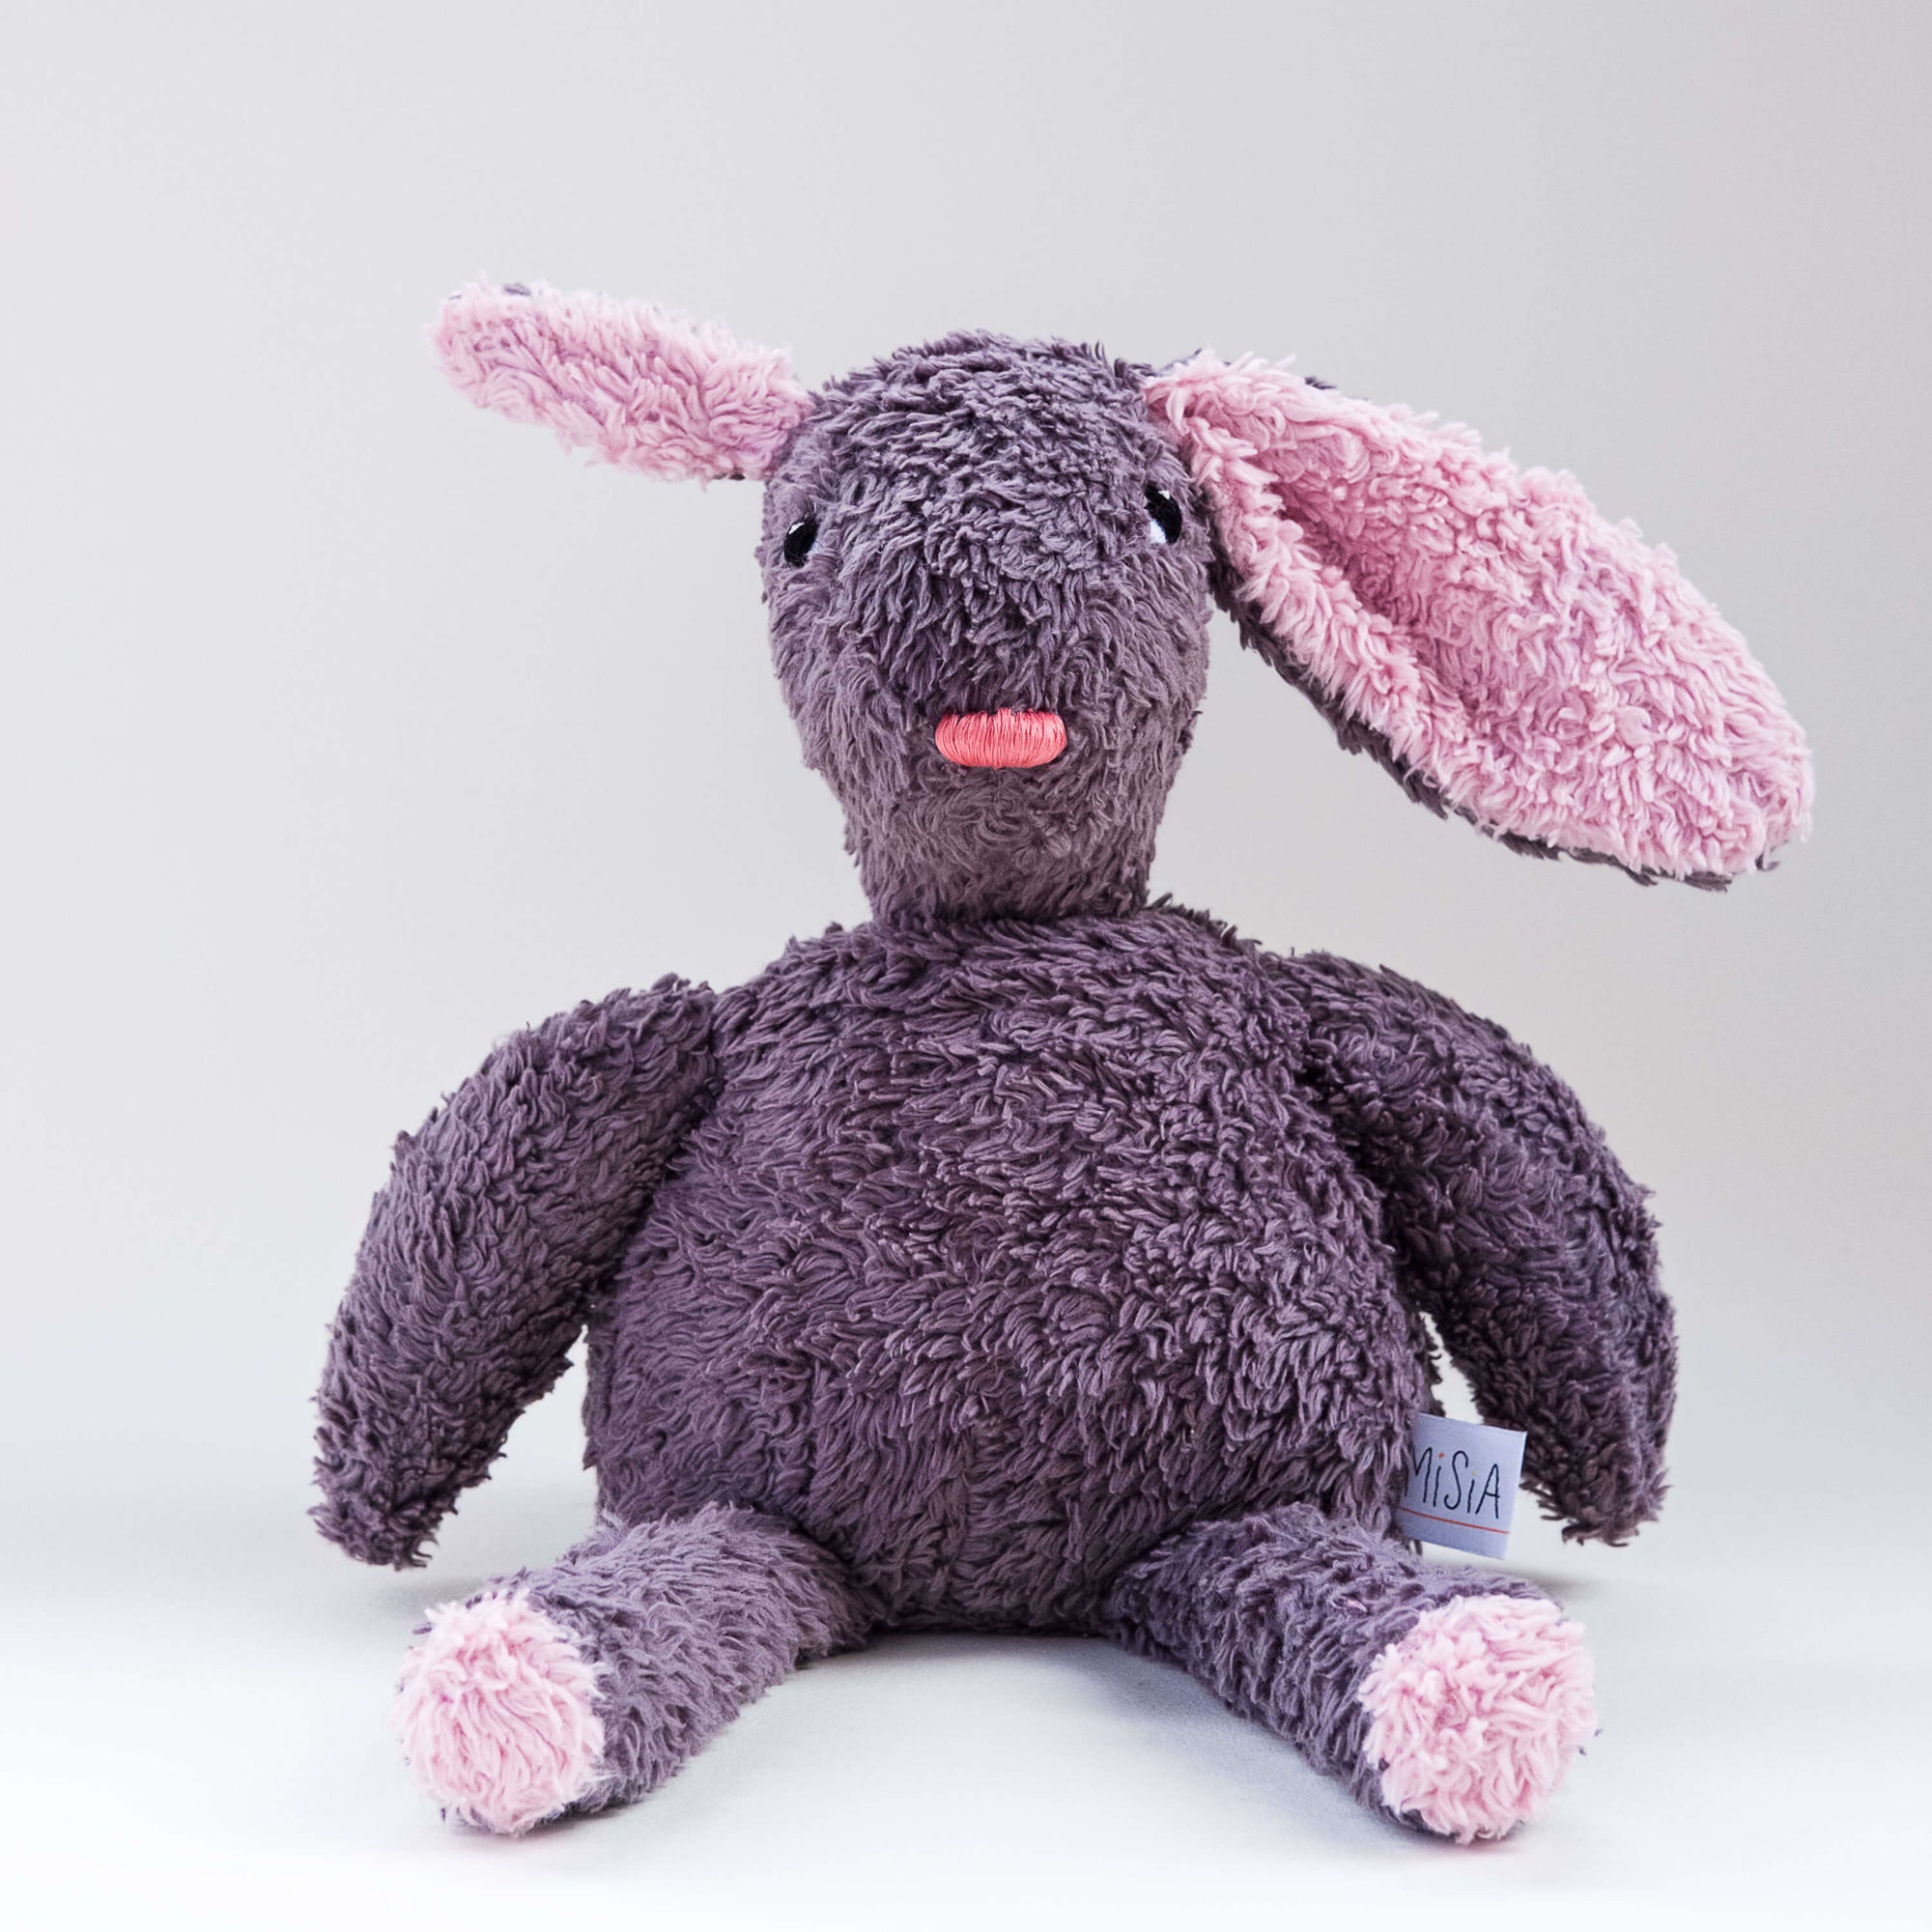 El conejo Gastón. Muñeco de peluche hecho a mano con telas y relleno de algodón orgánico y ecológico.